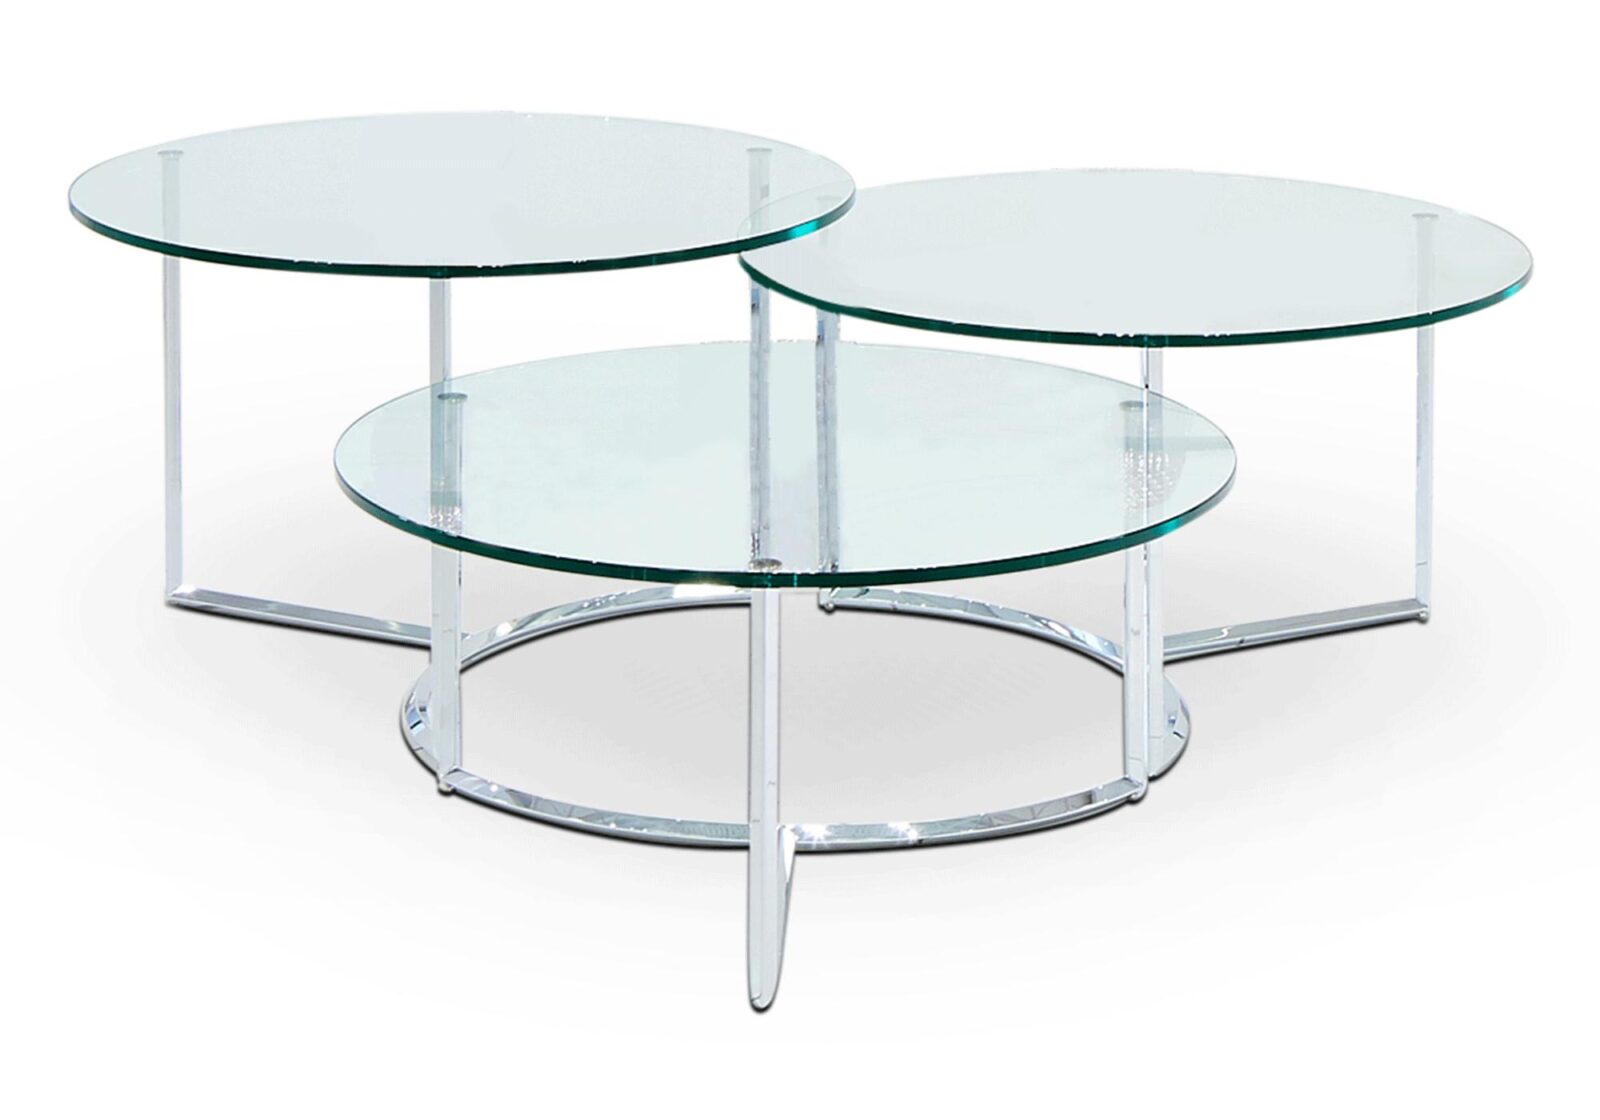 Salontisch Brasil mit Dreisatztisch. Klarglas rund. Durchmesser 70 cm  H 32  37  42 cm. Erhältlich bei Möbel Gallati.